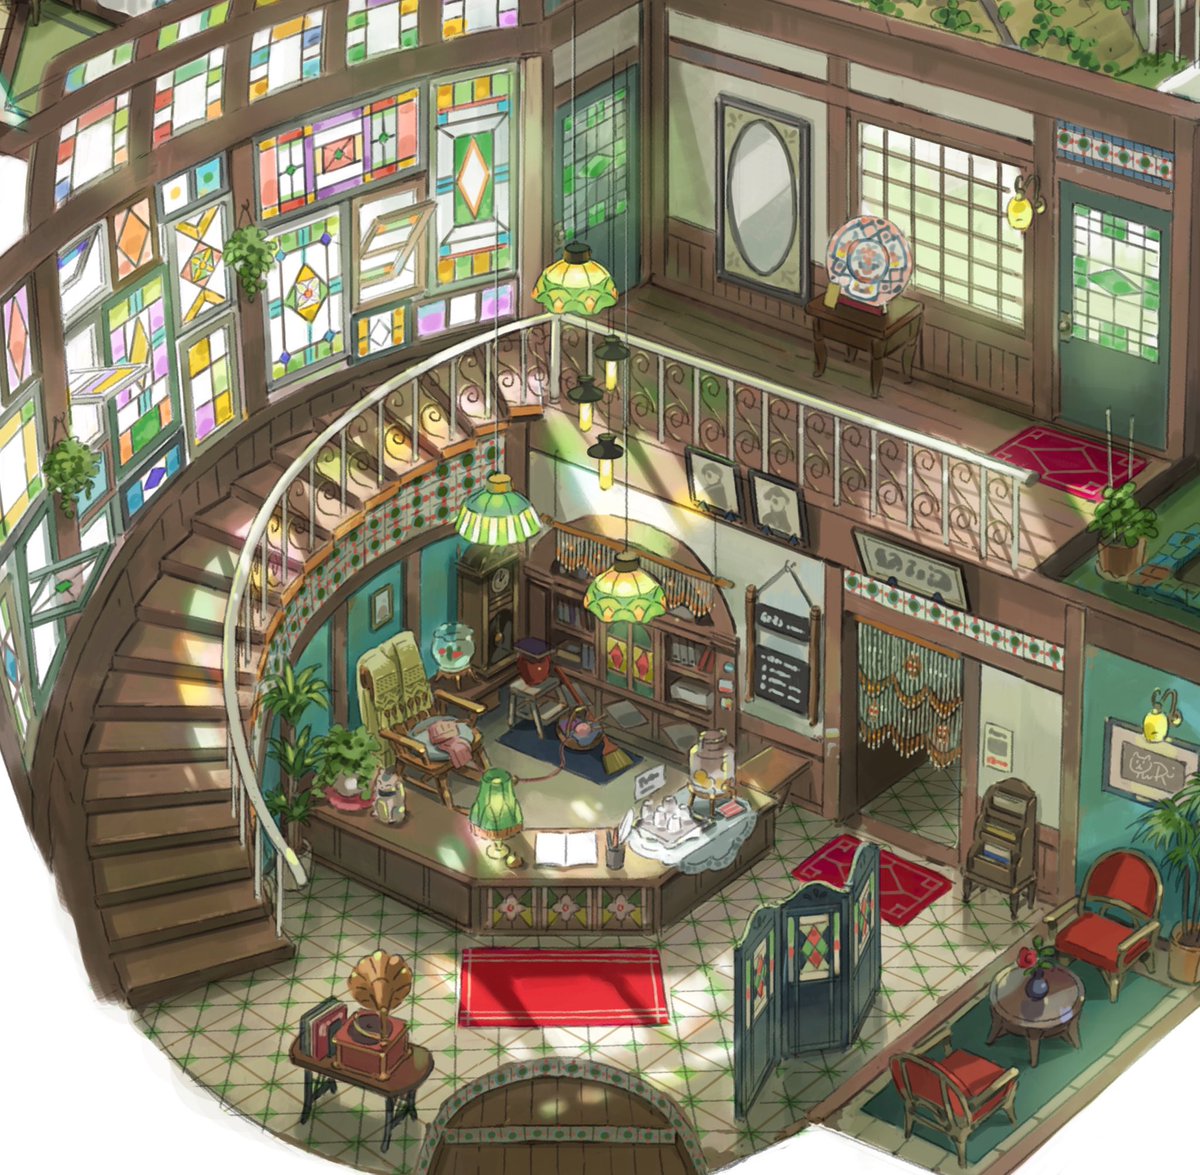 「前描いてた街の中にある宿の内観イメージ
Image of the inn 」|有里(Yuuri)のイラスト